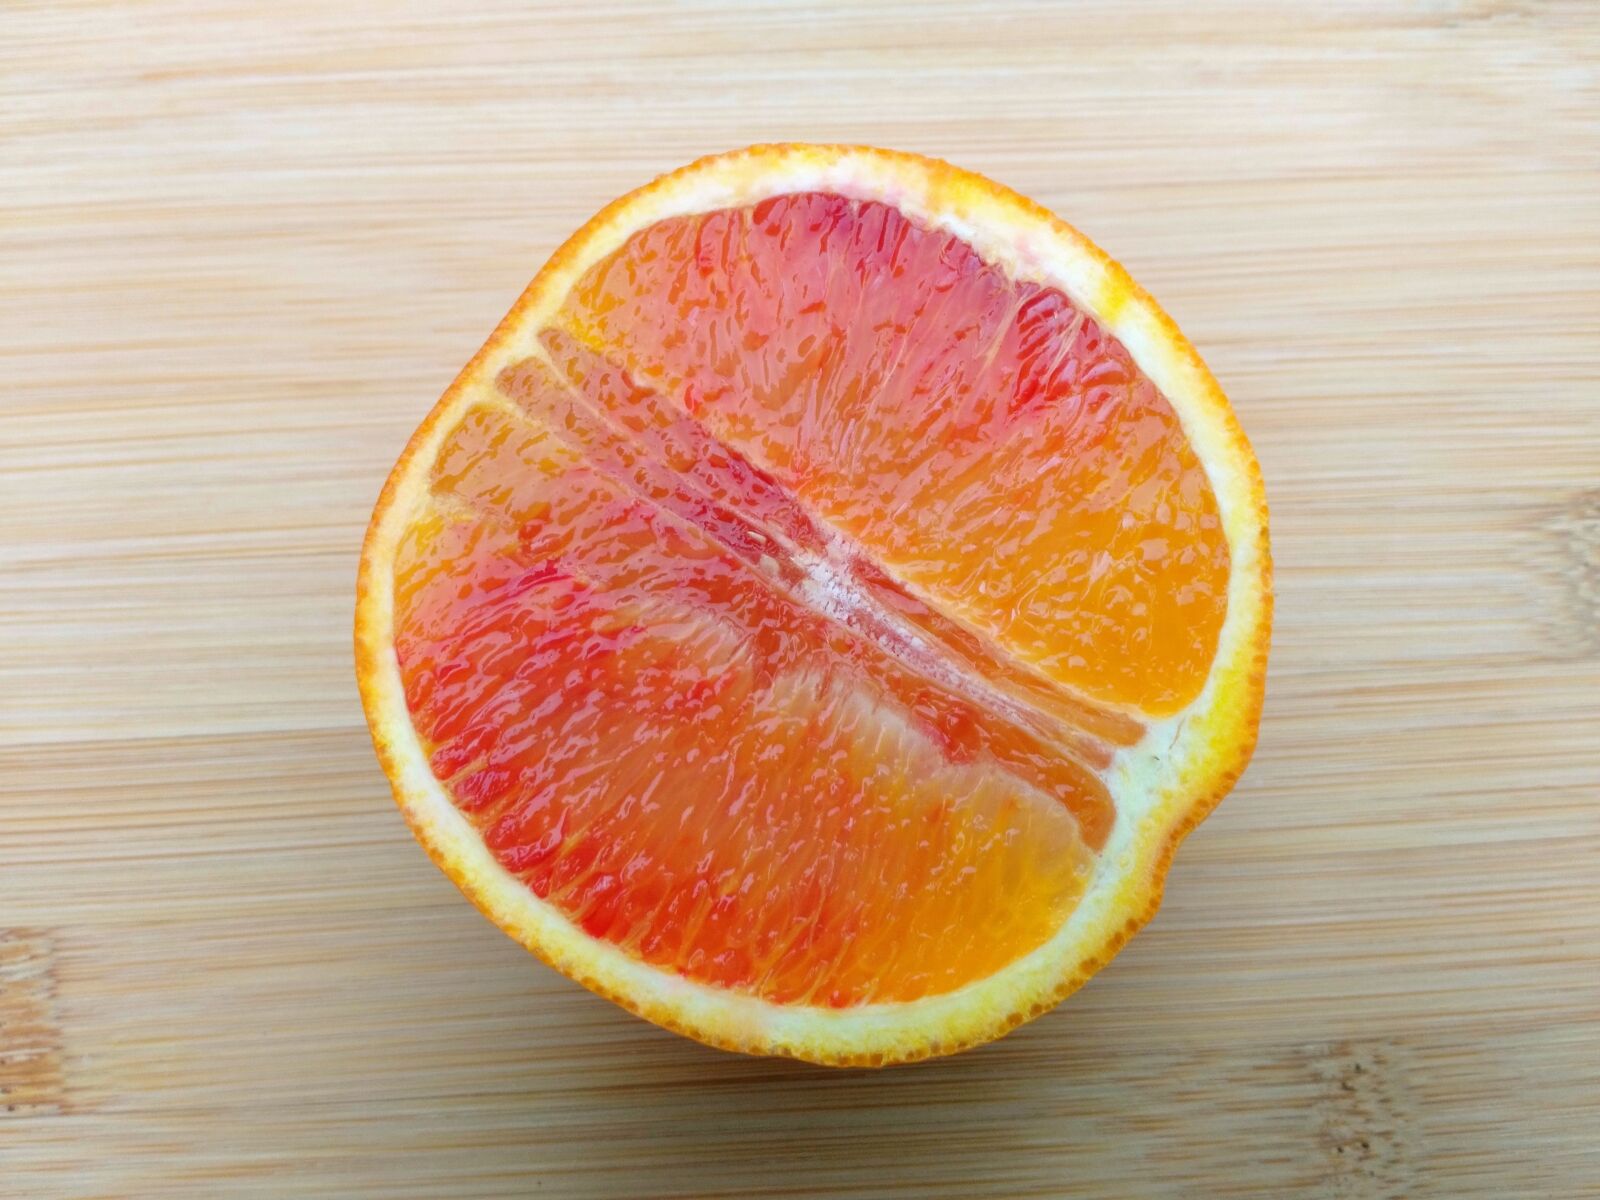 HUAWEI Honor 5X sample photo. Orange, slice, fruit photography